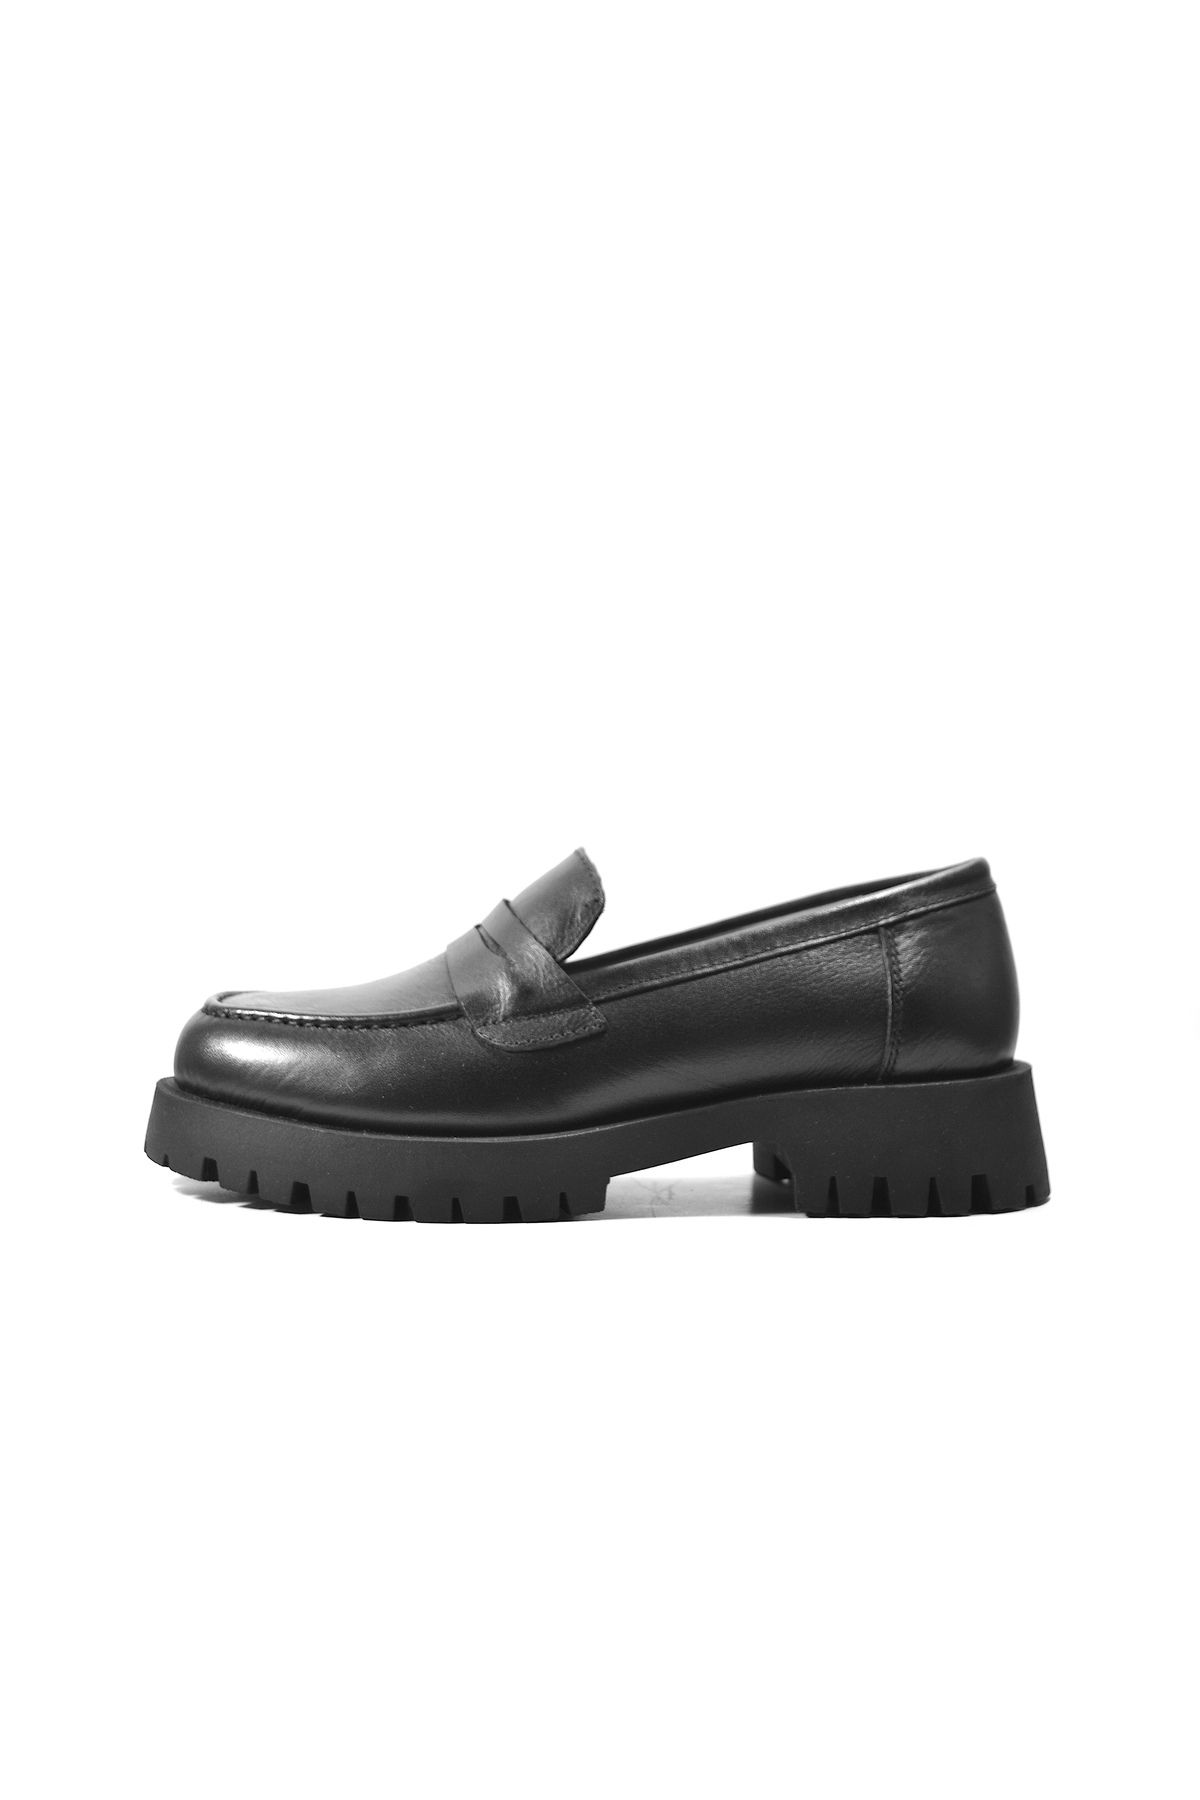 Onlo Ayakkabı LF.200 Hakiki Deri Siyah Kalın Taban Loafer Kadın Ayakkabı